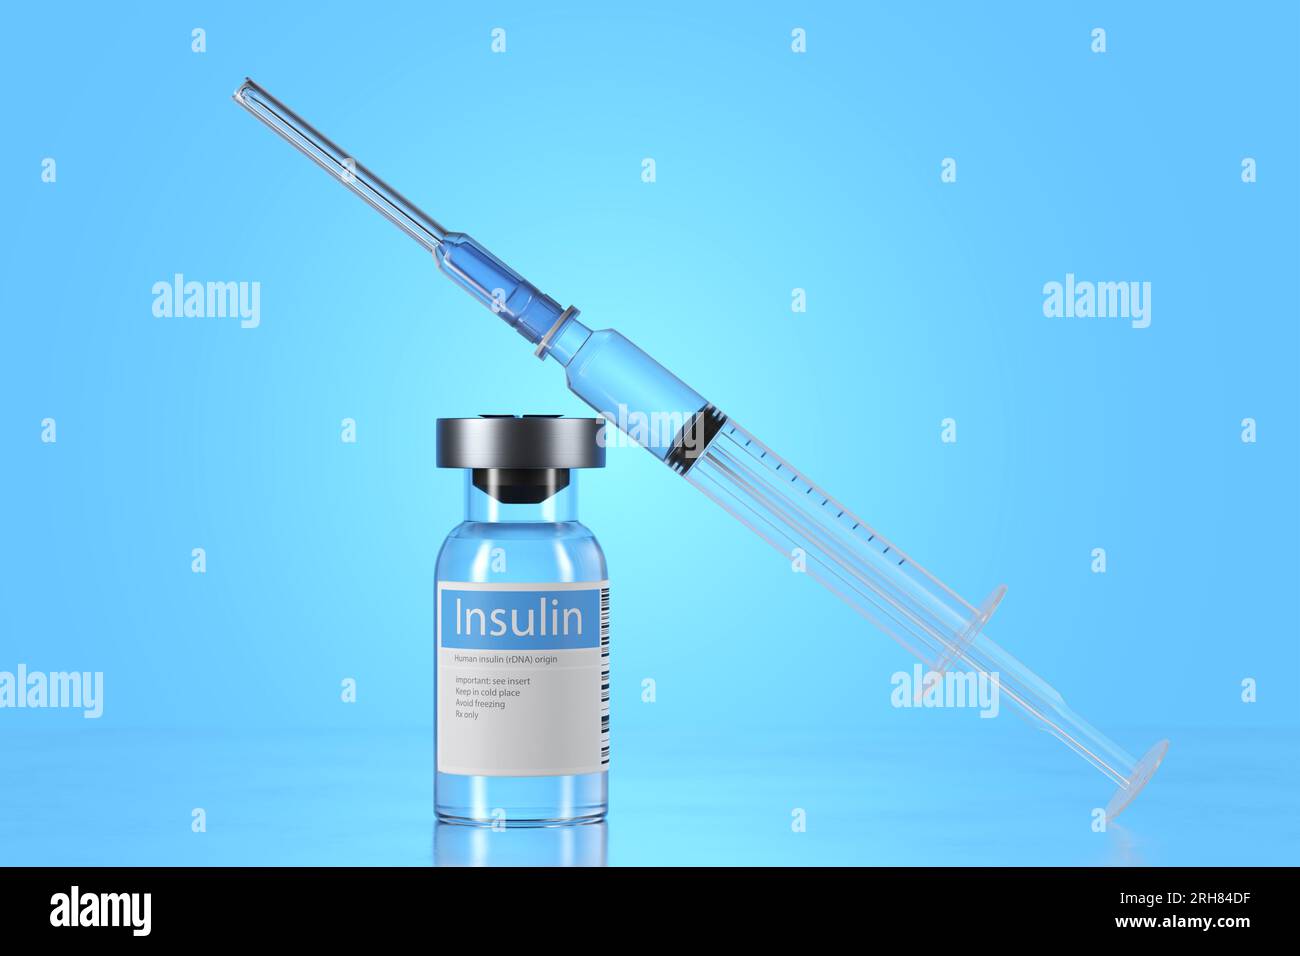 Una siringa presente sul tavolo, che può essere utilizzata per estrarre l'insulina dalle fiale. Le fiale sembrano realizzate in vetro e sono etichettate con Foto Stock